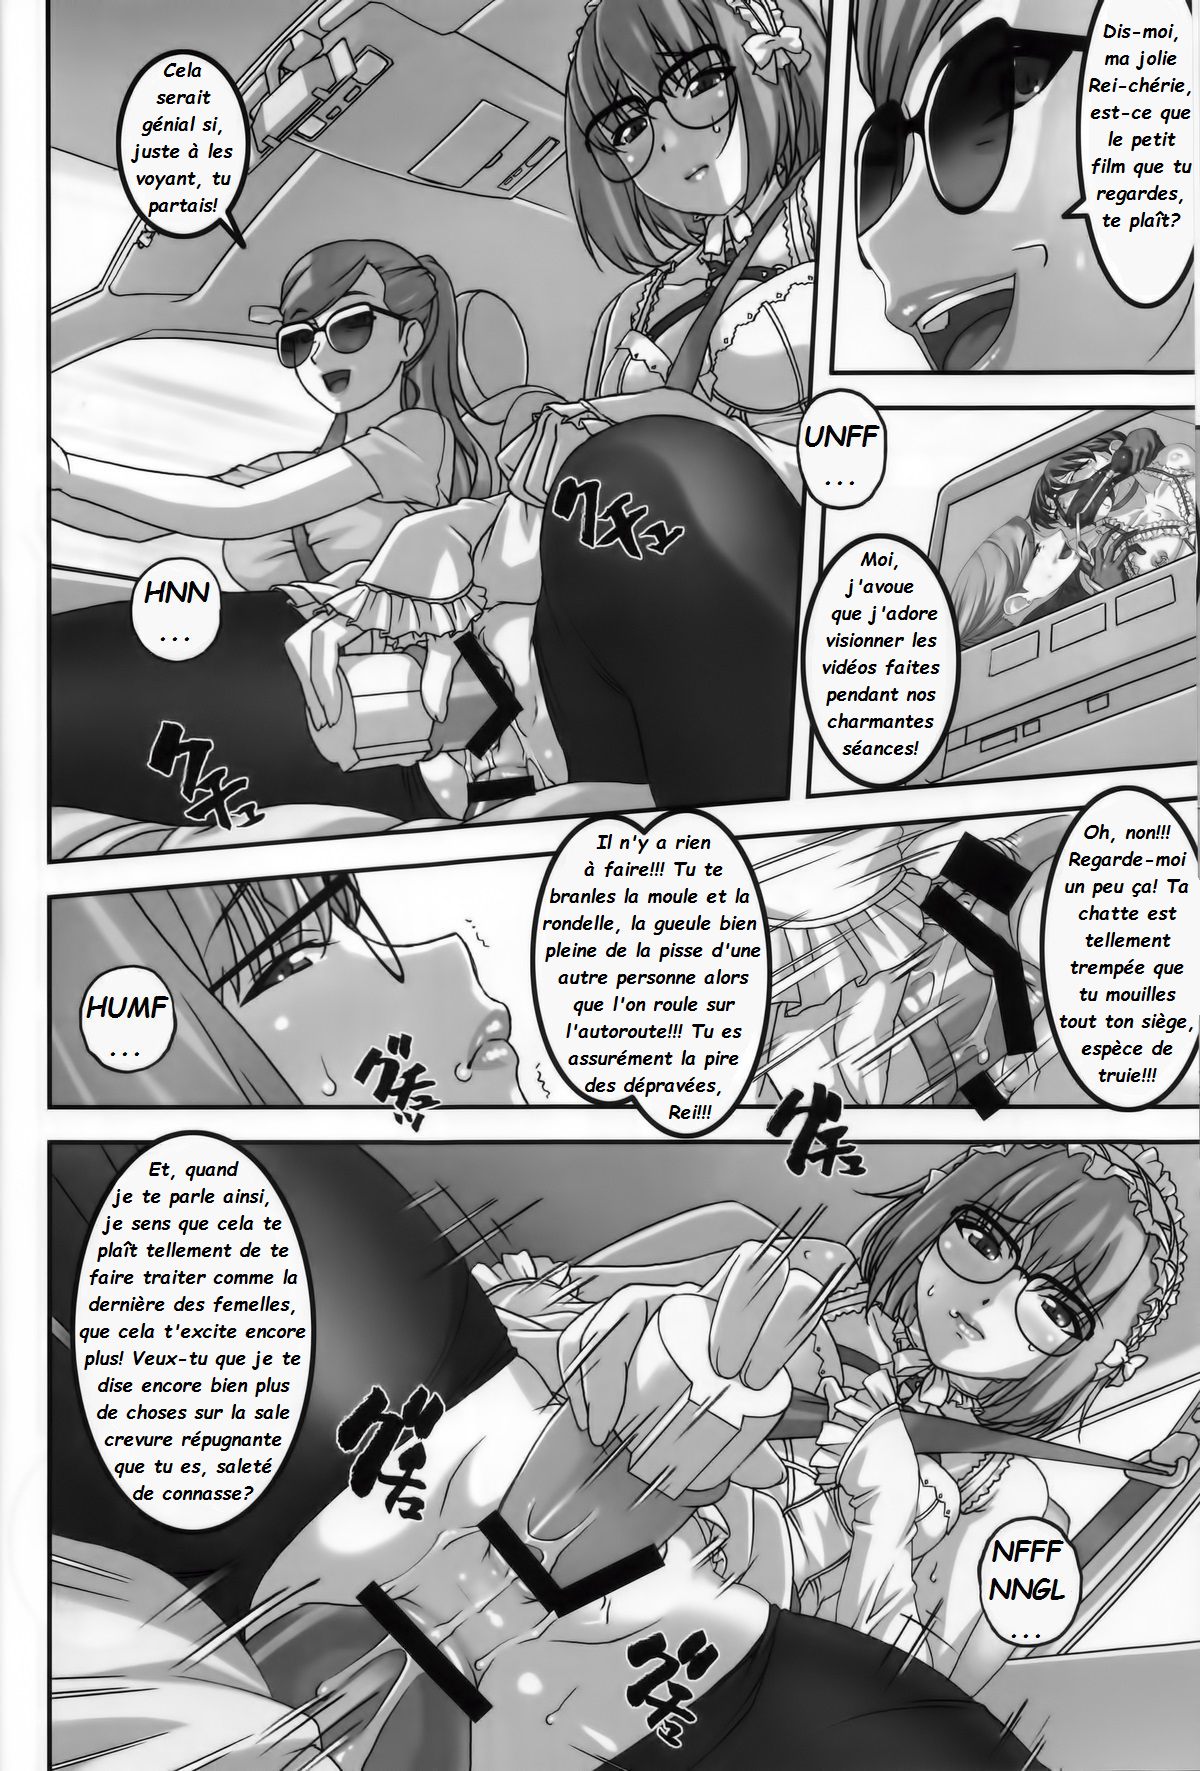 Anoko ga Natsuyasumi ni Ryokou saki de Oshiri no Ana wo Kizetsu suru hodo Naburare tsuzukeru Manga  La jeune Rei et sa nounou Misuzu. Volume 2 numero d'image 5